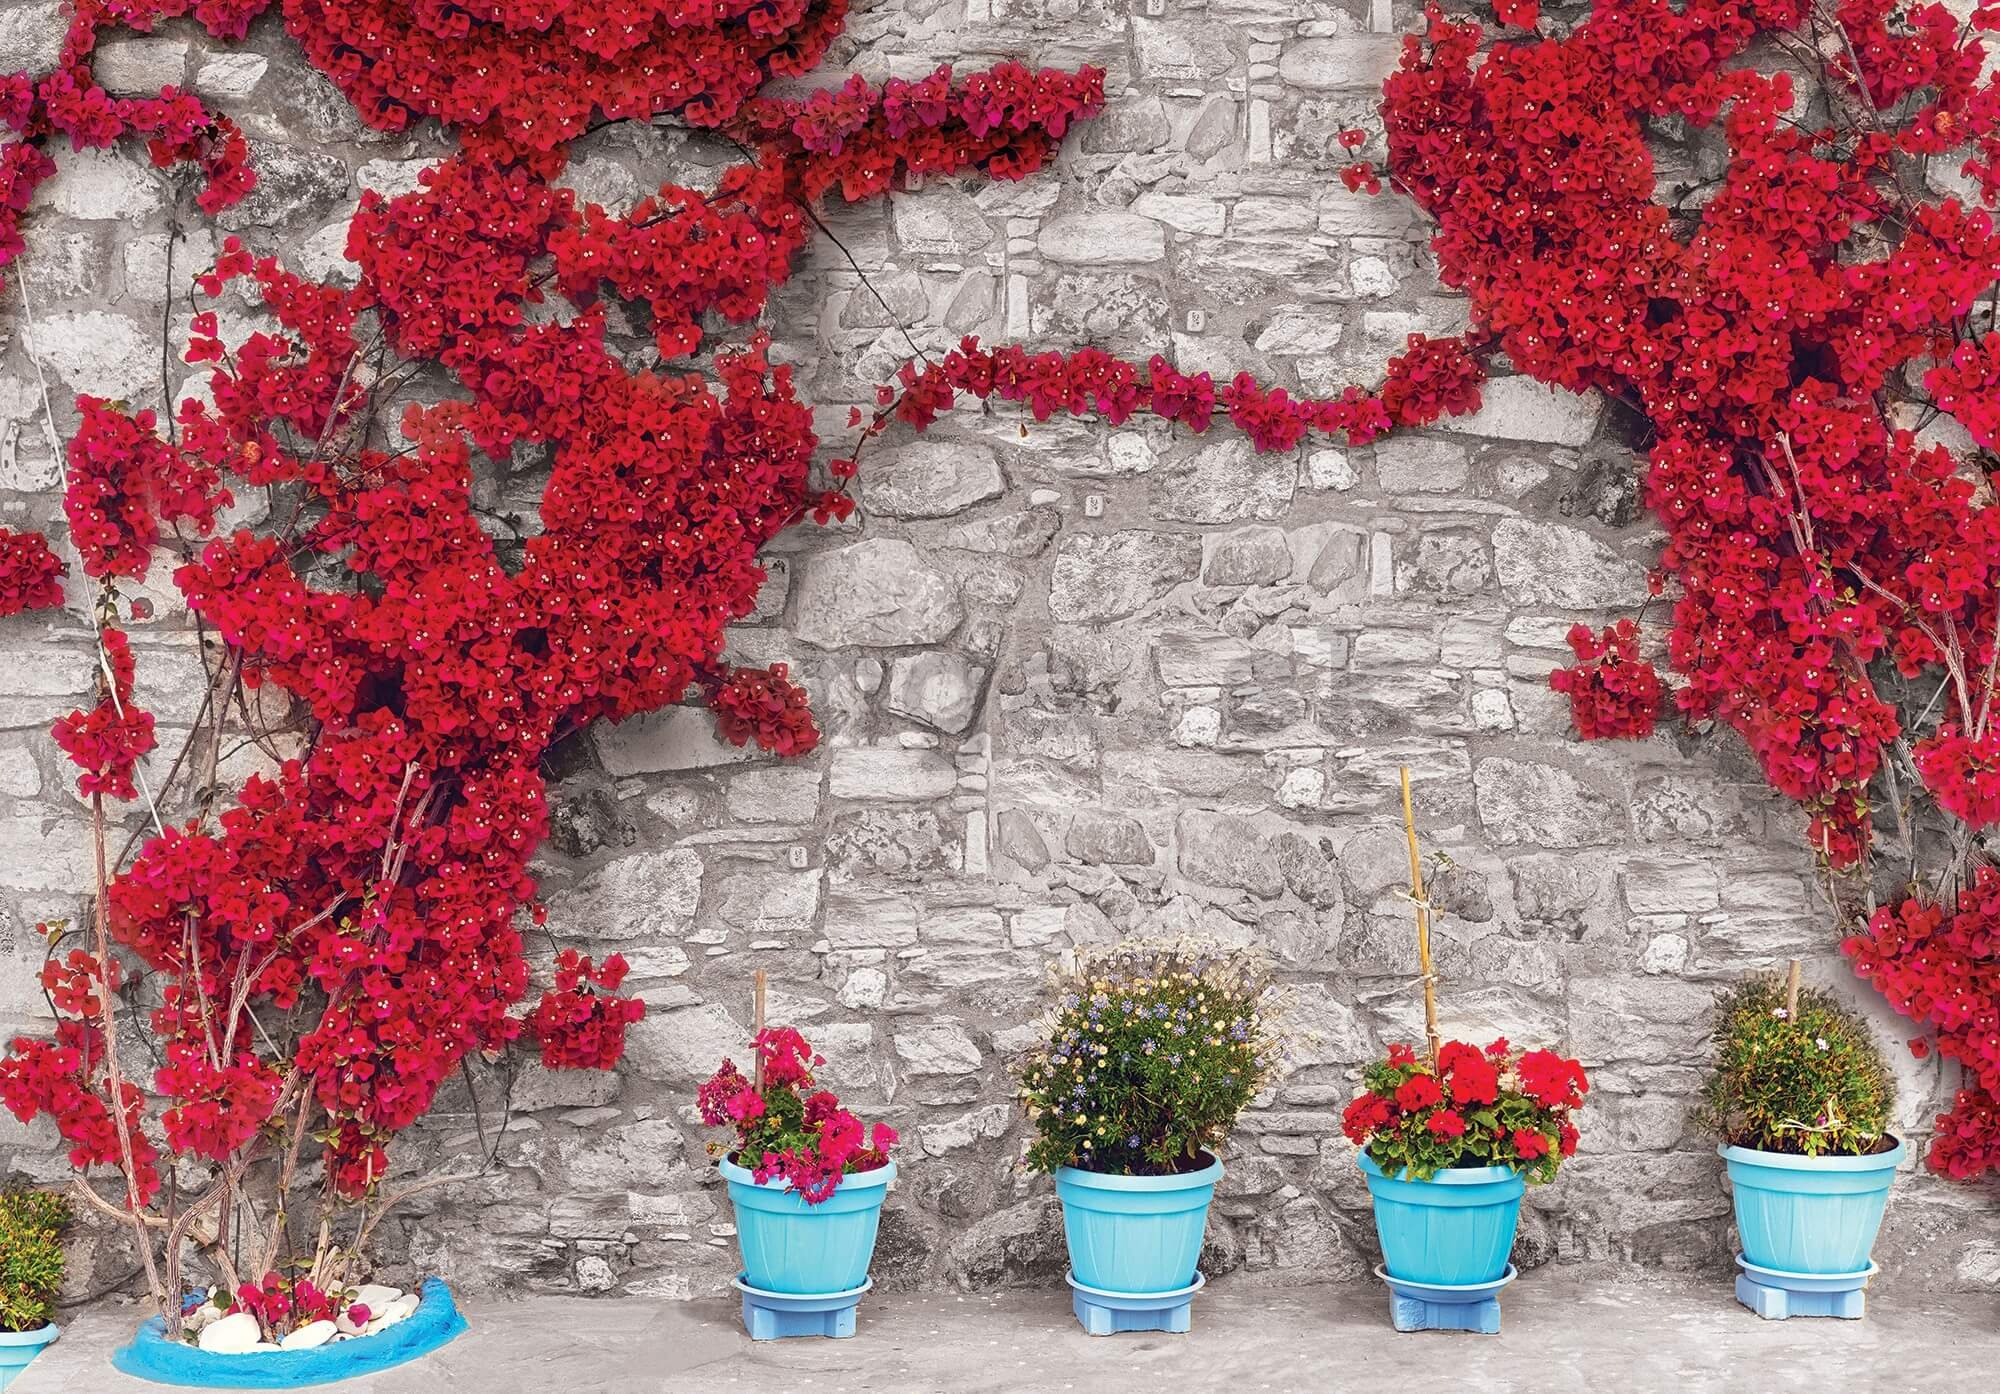 Fototapeta vliesová: Červená kvetinová stena (1) - 416x254 cm